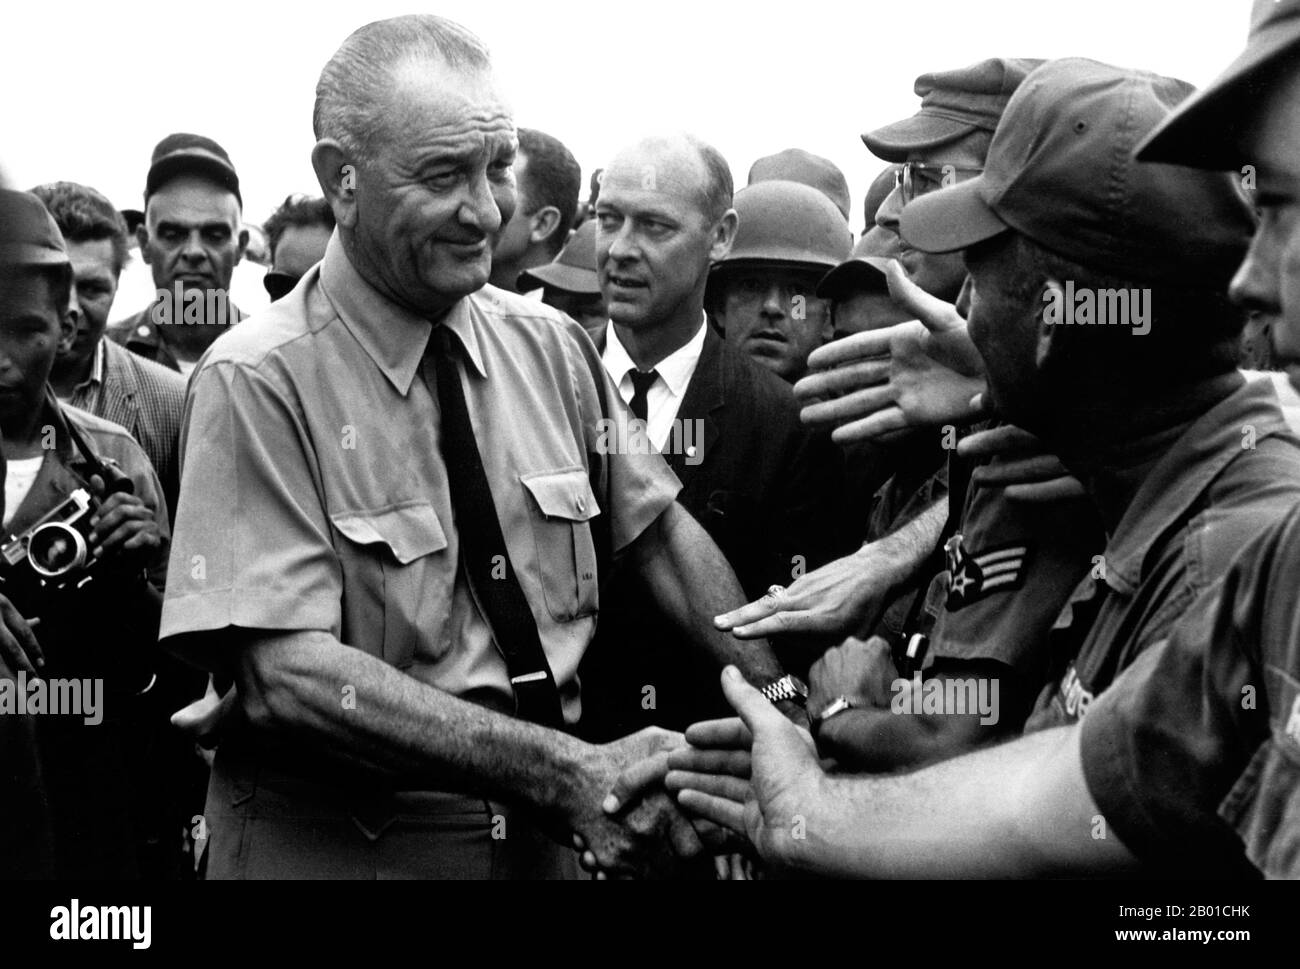 Vietnam: Präsident Lyndon B. Johnson begrüßt amerikanische Truppen in Saigon, 1966. Der zweite Indochina-Krieg, in Amerika als Vietnamkrieg bekannt, war ein militärischer Konflikt aus der Zeit des Kalten Krieges, der sich in Vietnam, Laos und Kambodscha vom 1. November 1955 bis zum Fall Saigons am 30. April 1975 ereignete. Dieser Krieg folgte dem ersten Indochina-Krieg und wurde zwischen Nordvietnam, unterstützt von seinen kommunistischen Verbündeten, und der Regierung von Südvietnam, unterstützt von den USA und anderen antikommunistischen Nationen, geführt. Die US-Regierung betrachtete die Beteiligung am Krieg als eine Möglichkeit, eine kommunistische Übernahme von Südvietnam zu verhindern. Stockfoto